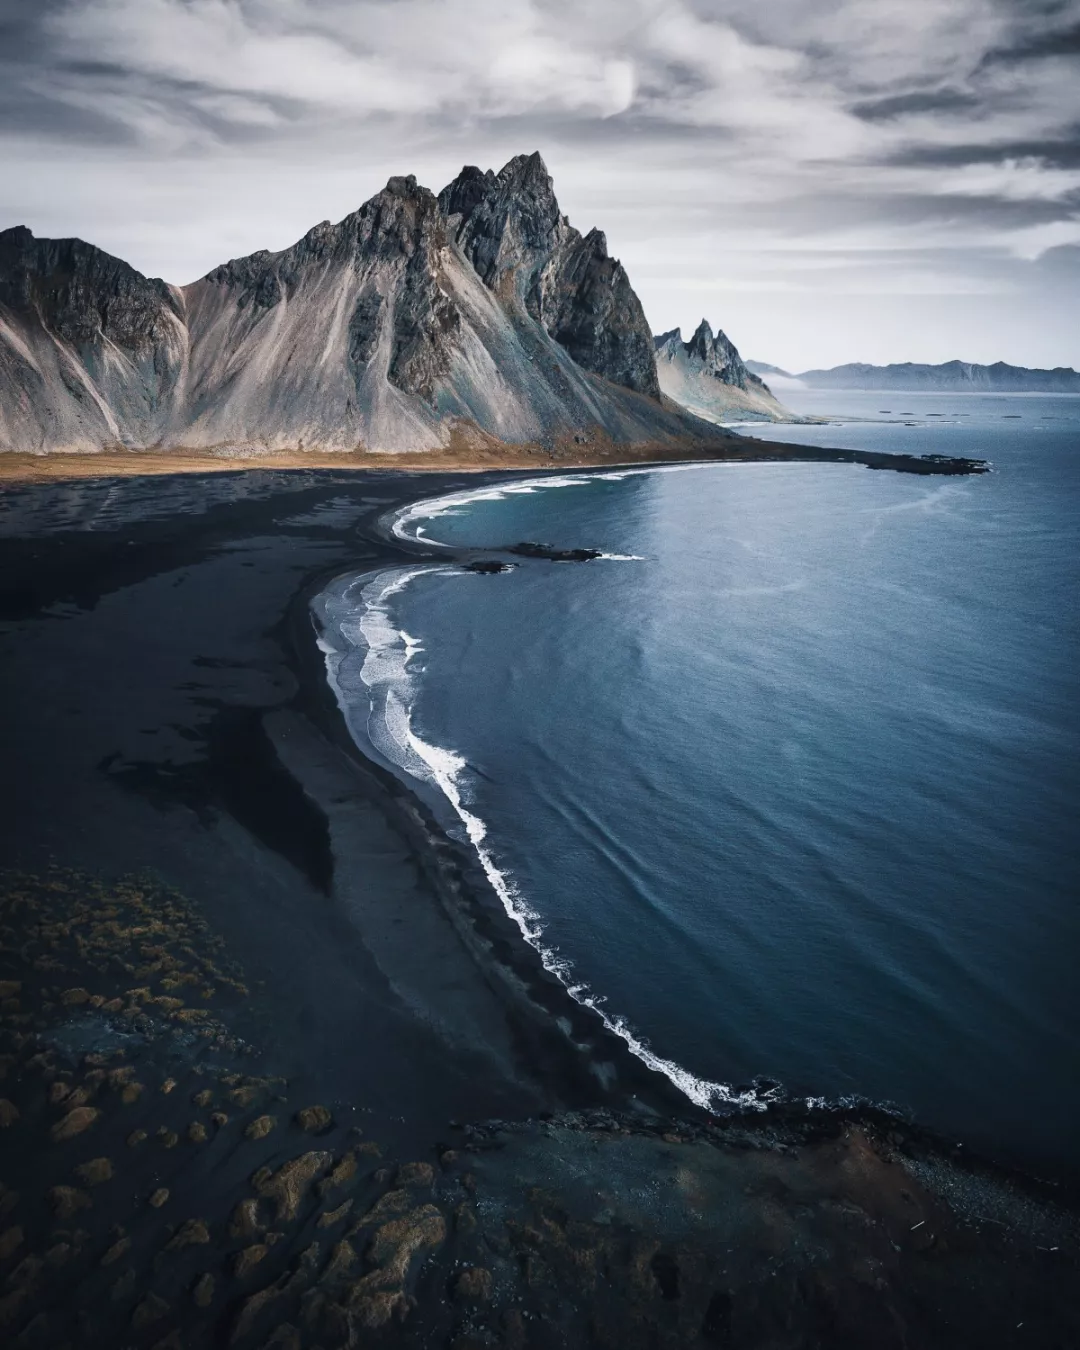 来冰岛看北极光 | 最佳季节、最佳时间和最佳地点 | Guide to Iceland